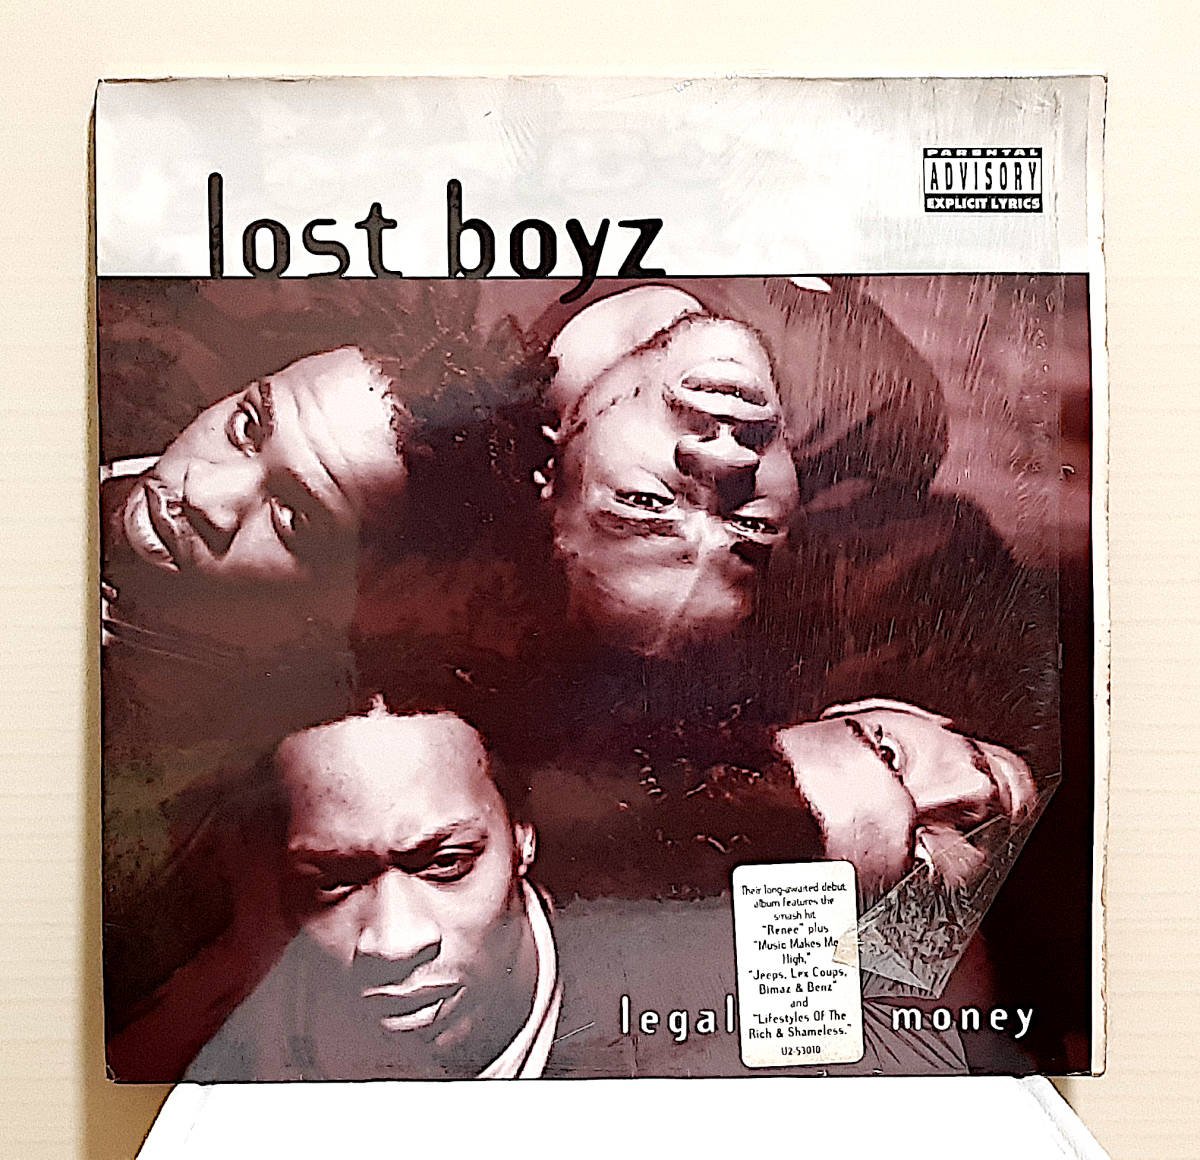 即決送料無料【USオリ盤2LPレコード】Lost Boyz - Legal Drug Money (1996年) U2-53010 /  ロスト・ボーイズ 1st Album ヒップホップ名盤